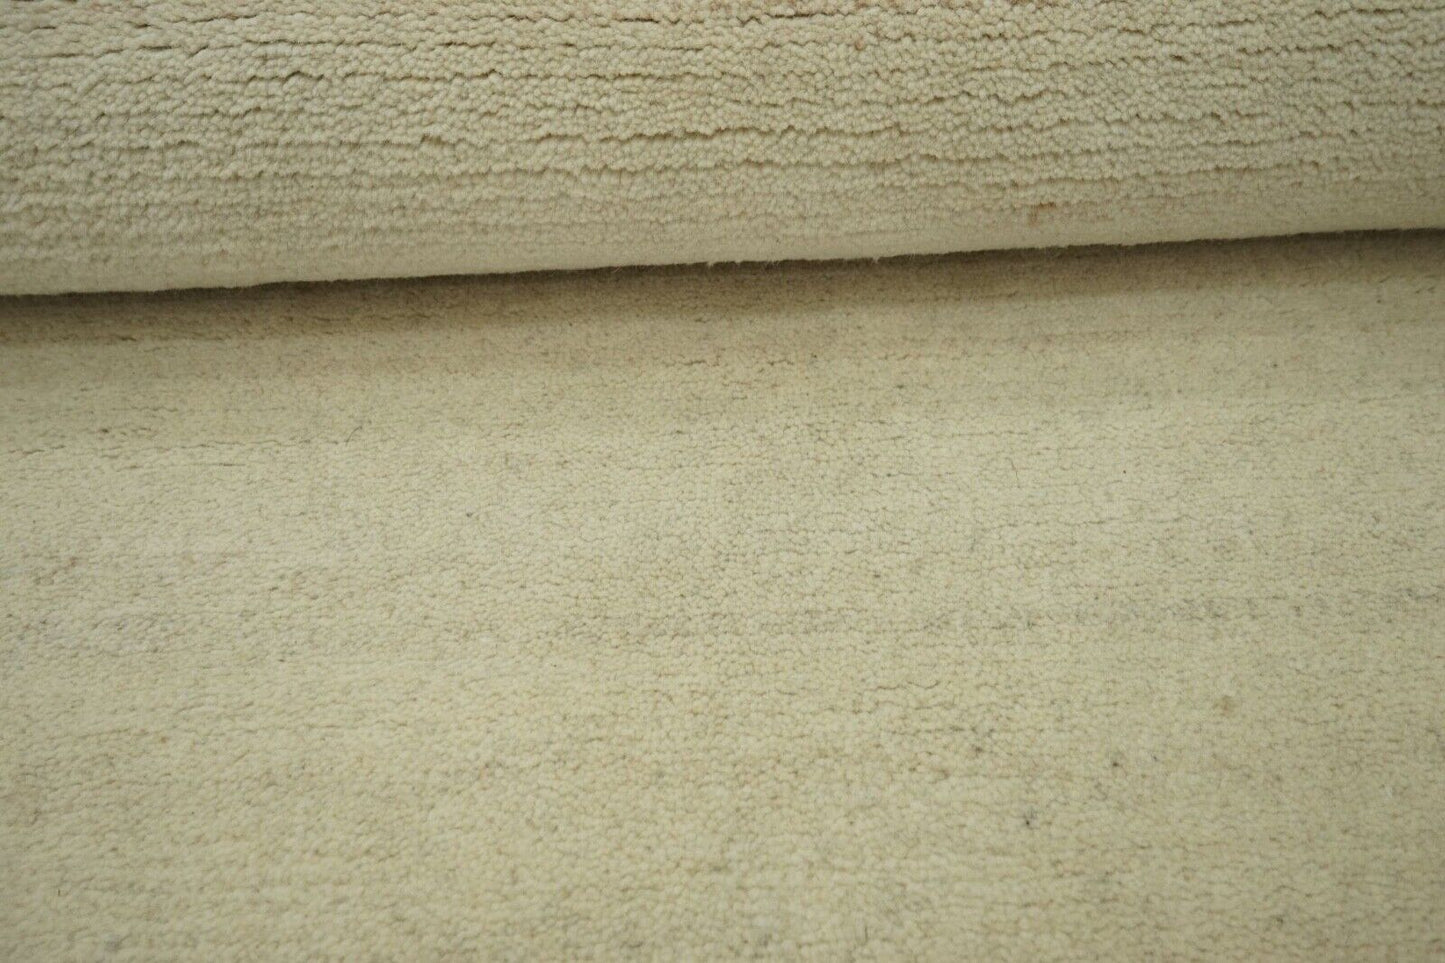 Nepal Teppich Handgeknüpft Beige Braun 90X160 cm Wolle Orientteppich N775